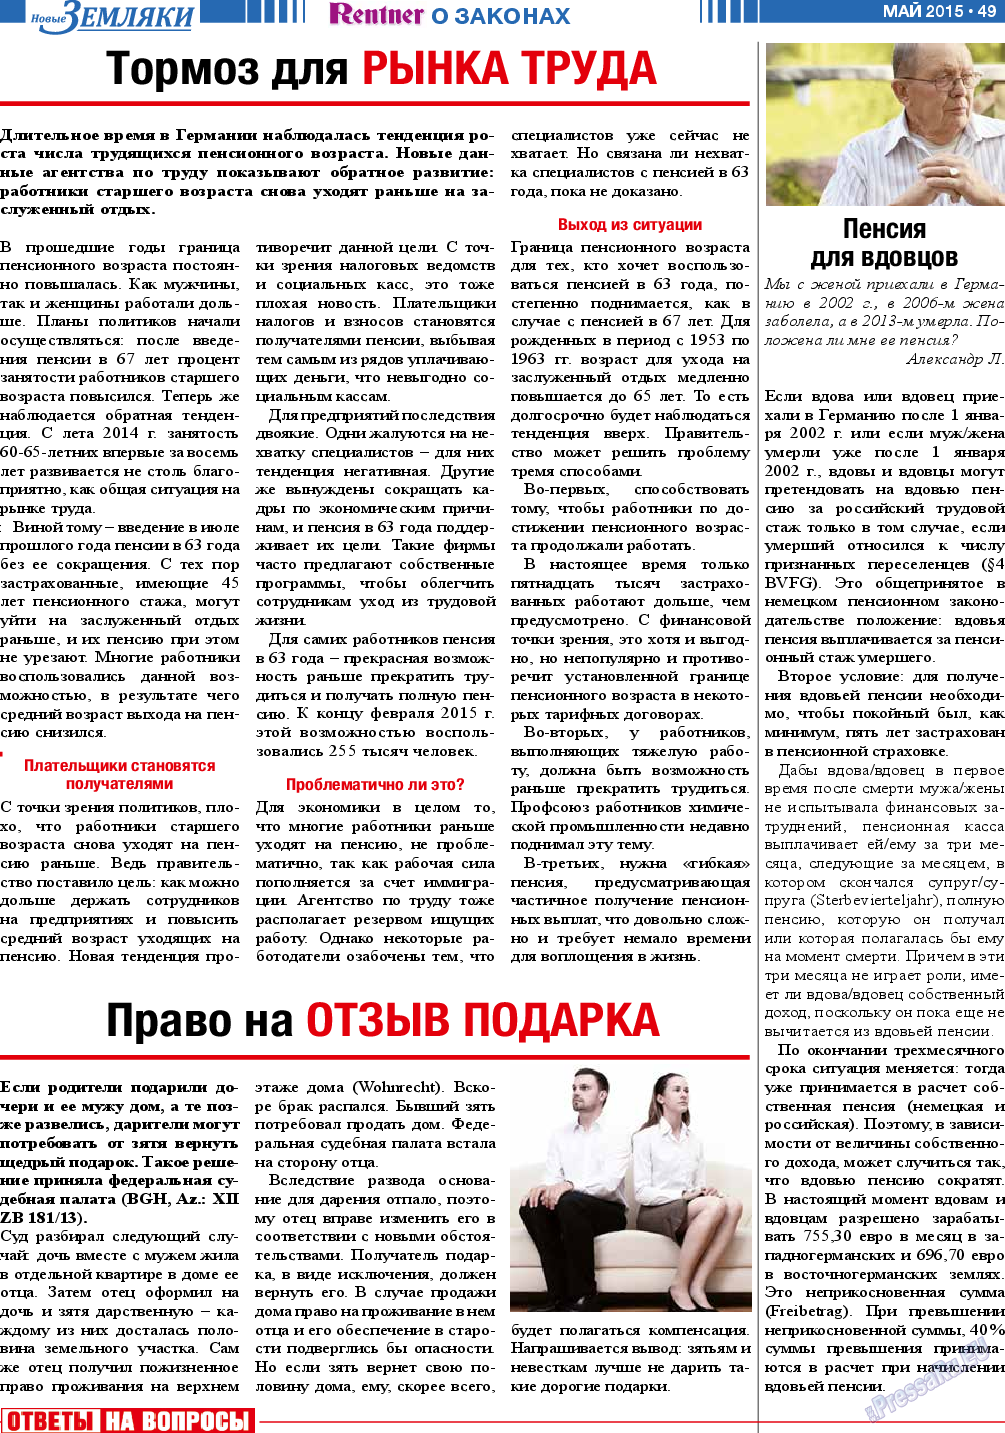 Новые Земляки, газета. 2015 №5 стр.49